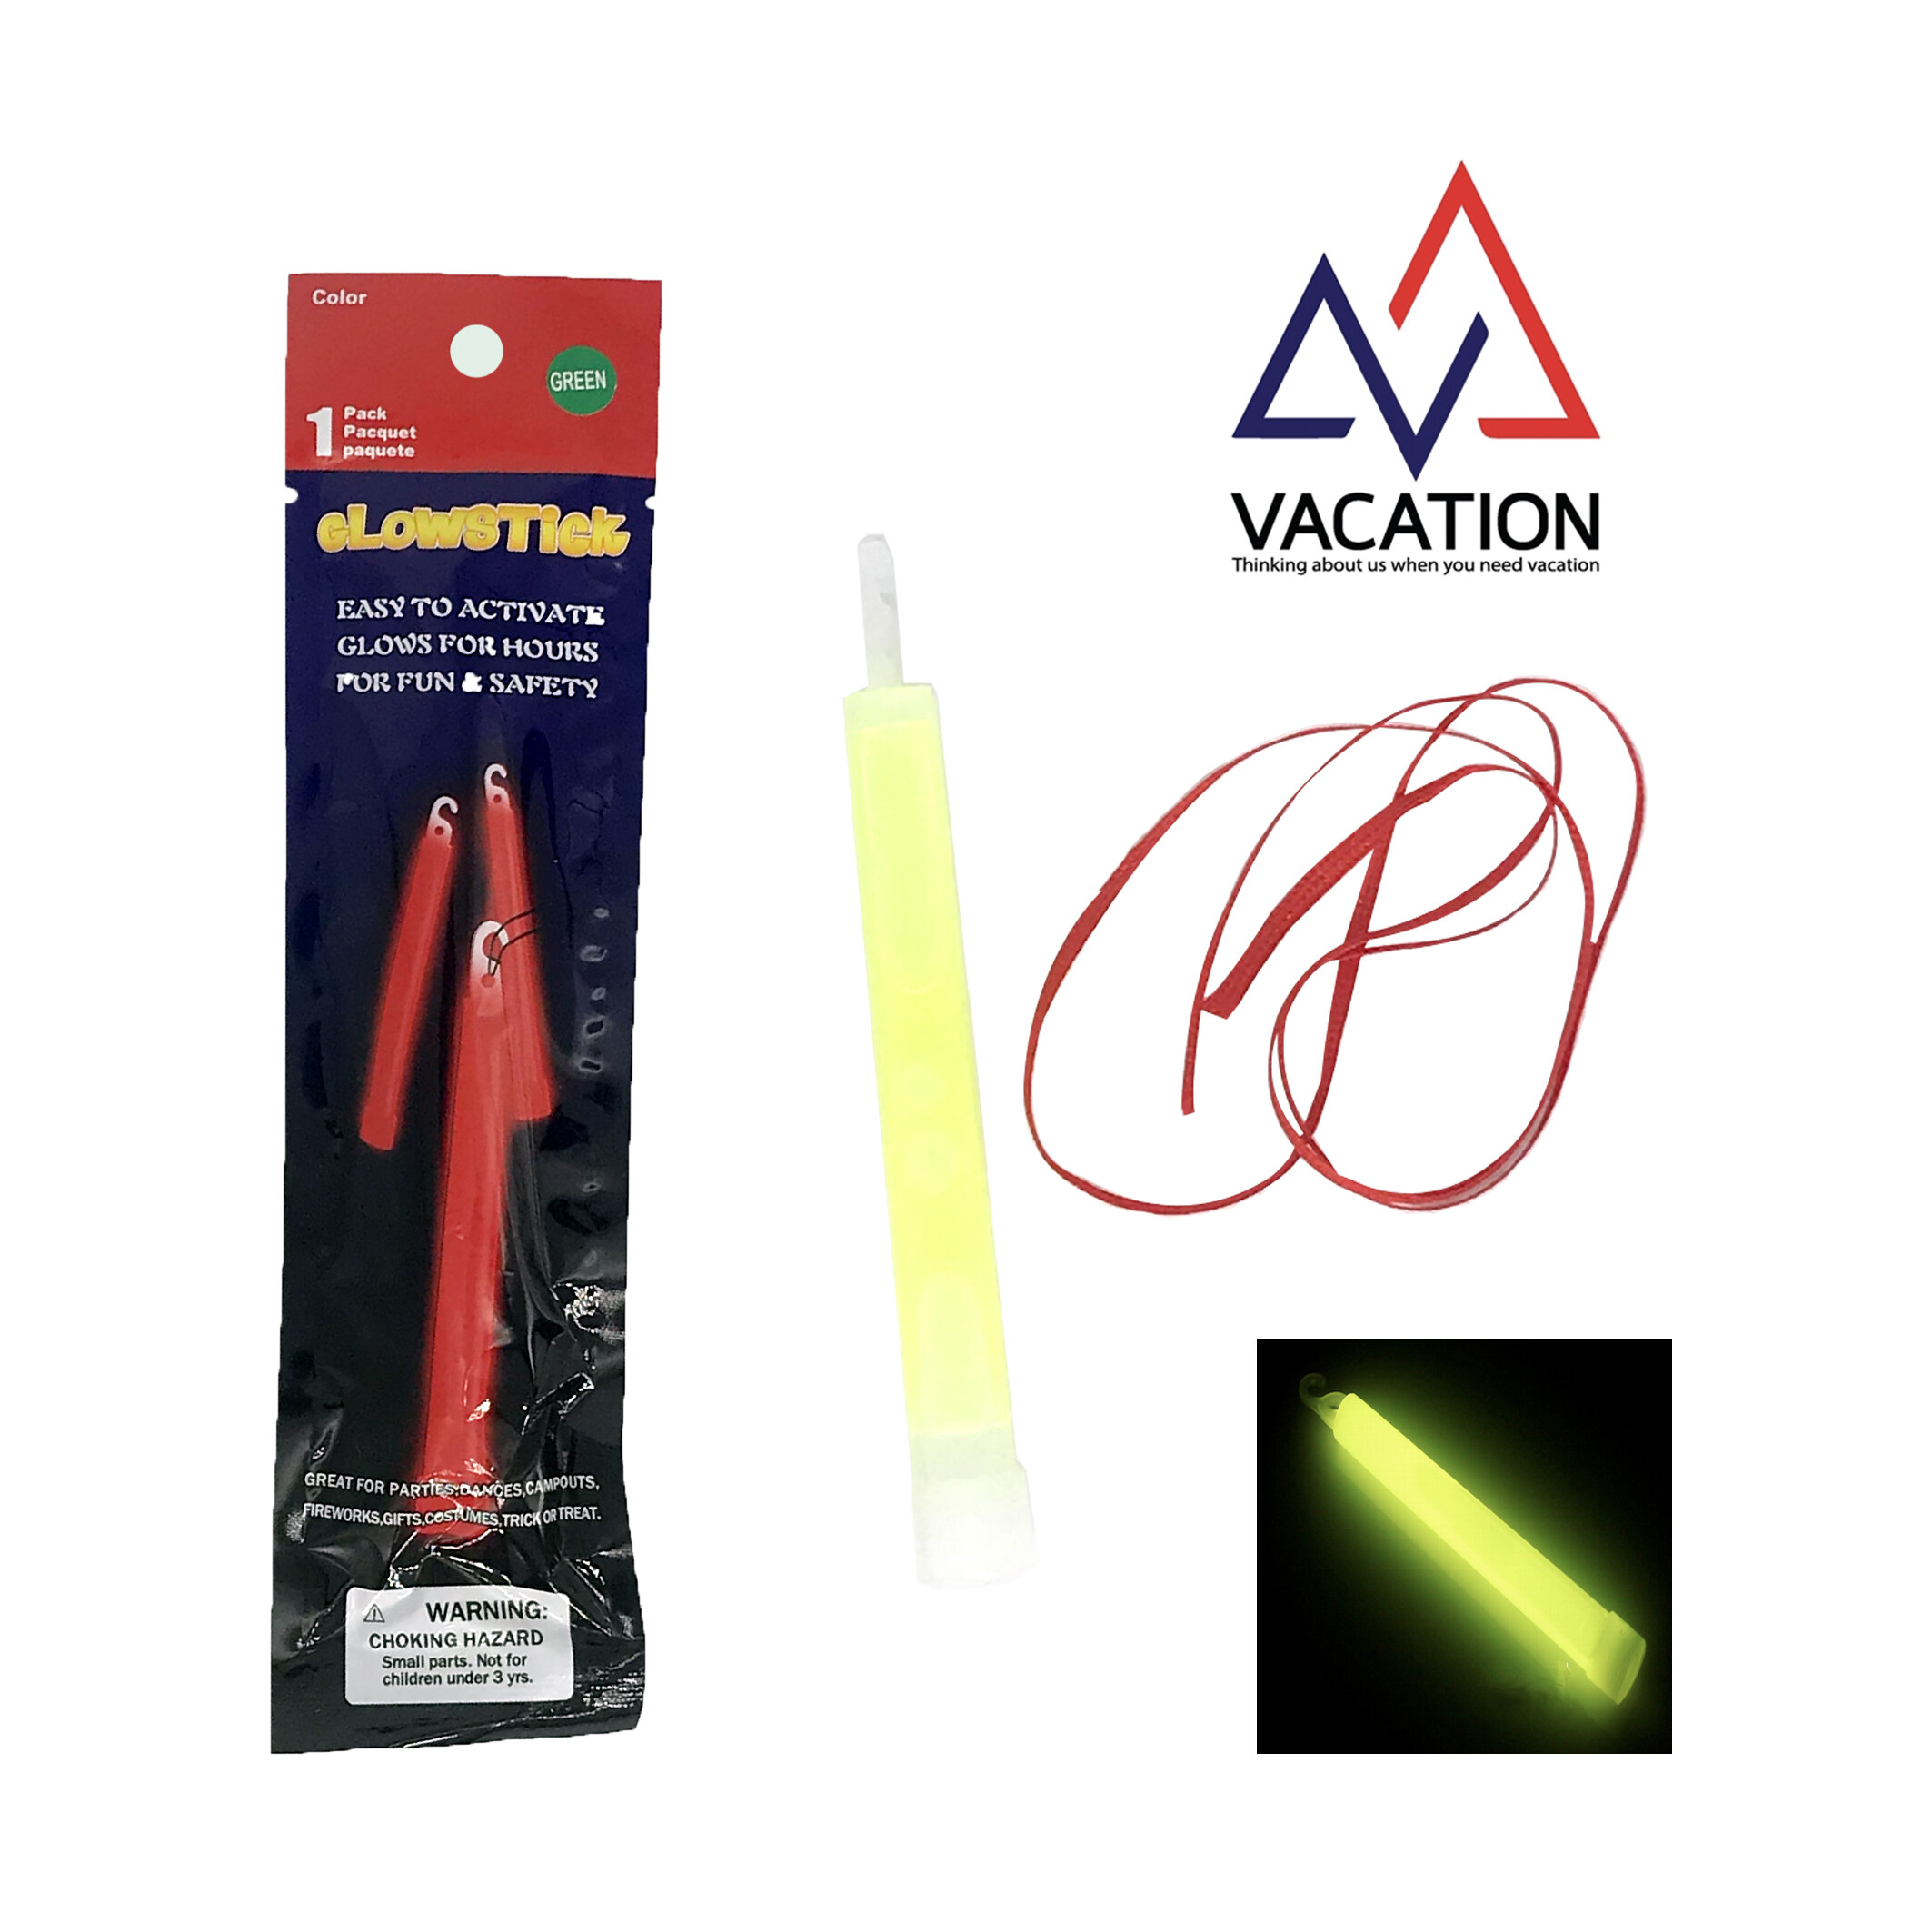 VACATION Light stick แท่งไฟ ส่องสว่าง แท่งไฟส่งสัญญาฉุกเฉิน 1 ซอง ประกอบด้วย 1 แท่ง นานถึง 8 ชั่วโมง สีเขียว สีเหลือง สีน้ำเงิน สีส้ม สีแดง สีชมพู